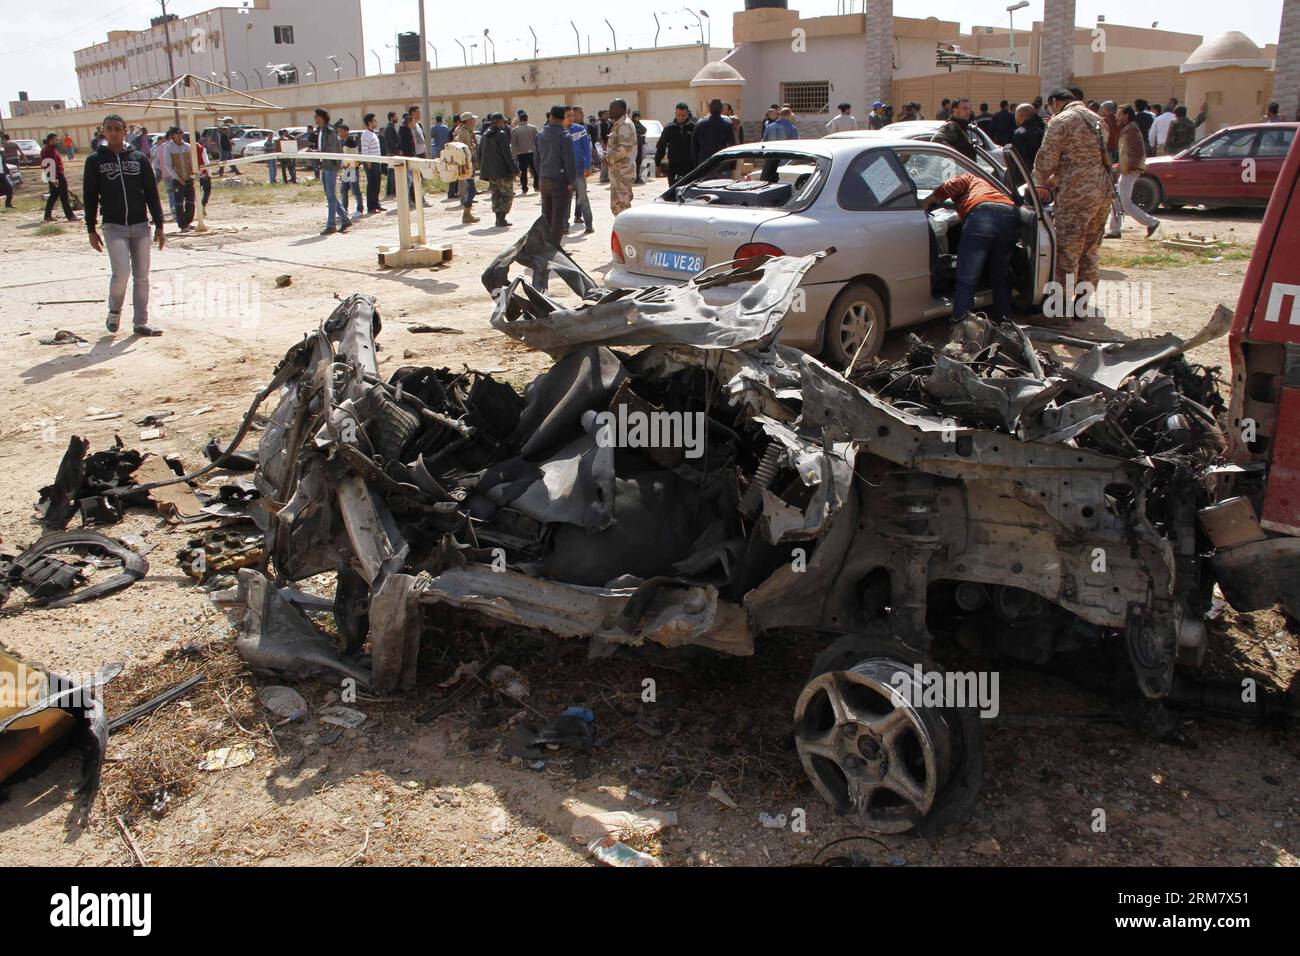 (140317) -- BENGHAZI, 17 mars 2014 (Xinhua) -- des gens vérifient les voitures endommagées à Benghazi, Libye, 17 mars 2014. Une voiture piégée ciblant un camp militaire libyen à Benghazi a tué au moins cinq soldats et blessé dix autres lundi, ont déclaré des sources militaires et médicales à Xinhua. (Xinhua/Mohammed Elshaiky) LIBYA-BENGHAZI-MILITARY-CAMP-BOMB-ATTACK PUBLICATIONxNOTxINxCHN Benghazi Mars 17 2014 célébrités XINHUA vérifier les voitures endommagées à Benghazi Libye Mars 17 2014 une voiture piégée visant un camp militaire libyen à Benghazi A TUÉ au moins cinq soldats et blessé dix autres lundi militaire et médical S. Banque D'Images